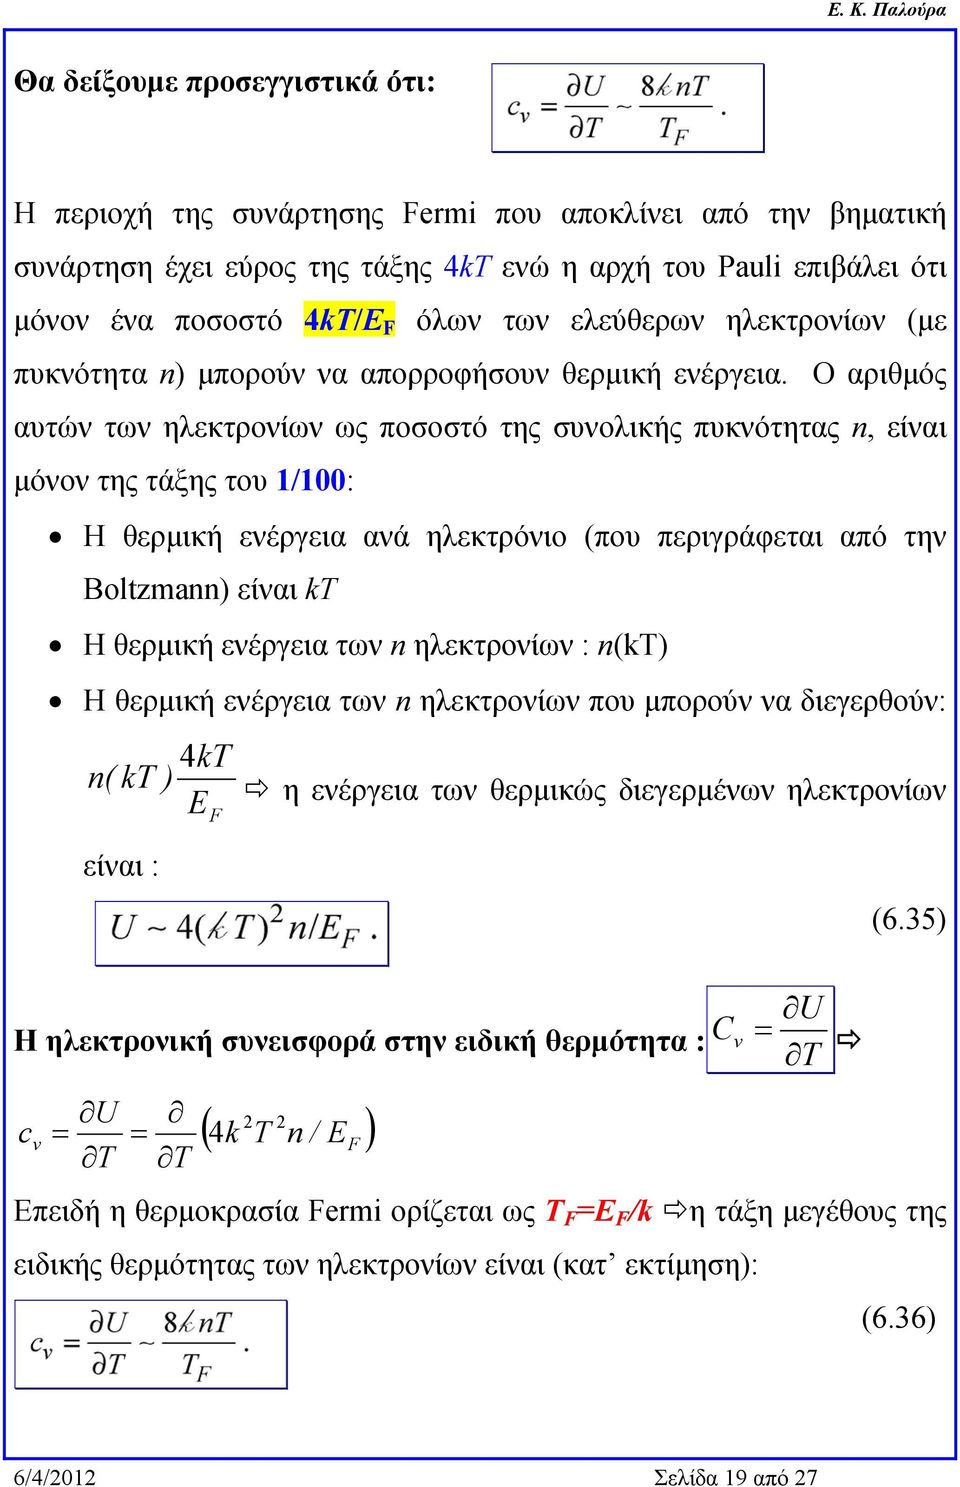 Ο αριθμός αυτών των ηλεκτρονίων ως ποσοστό της συνολικής πυκνότητας n, είναι μόνον της τάξης του 1/100: Η θερμική ενέργεια ανά ηλεκτρόνιο (που περιγράφεται από την Boltzmann) είναι kt Η θερμική